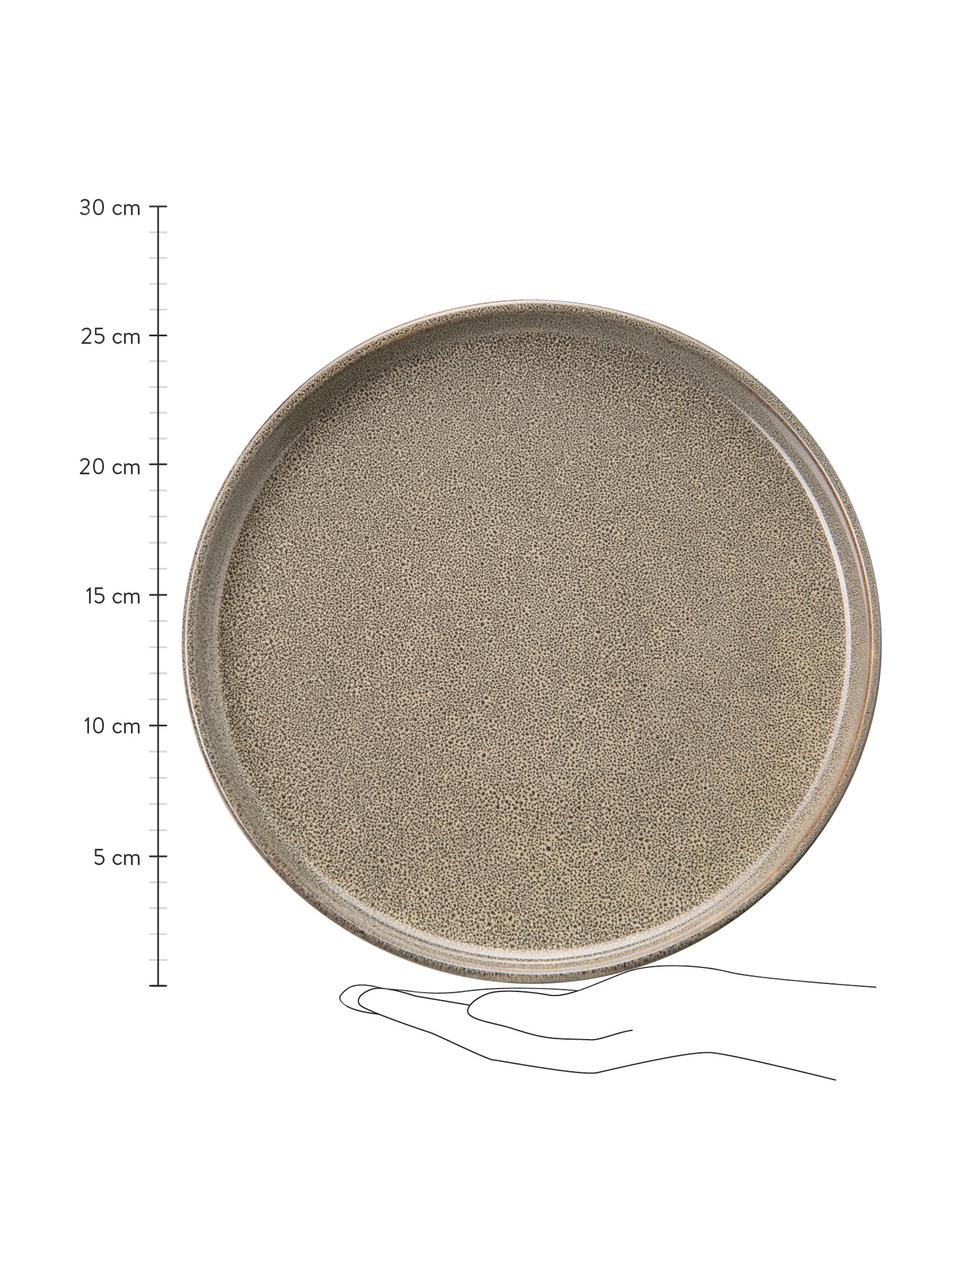 Steingut Speiseteller Ceylon in Grau/Grün gesprenkelt, 2 Stück, Steingut, Bräunlich, Grüntöne, Ø 27 cm